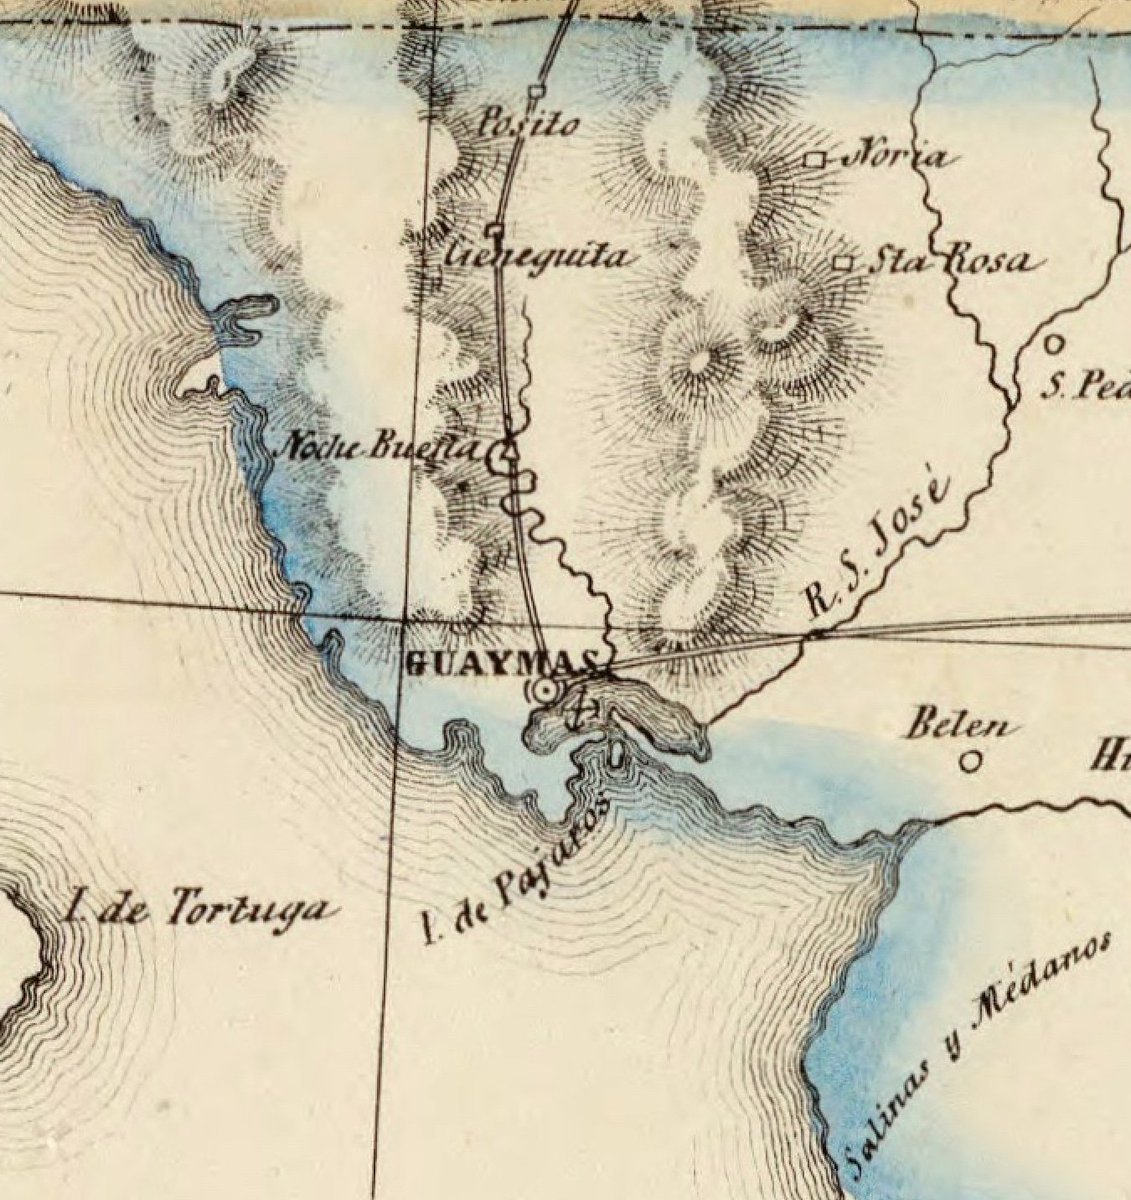 #Guaymas siempre había sido un puerto de importancia, aunque con escasa población. 

Vemos que la bahía de San Carlos y el famoso Tetakawi aún no aparecieron destacados en el mapa.   Empalme tampoco existía

#sonora 1857